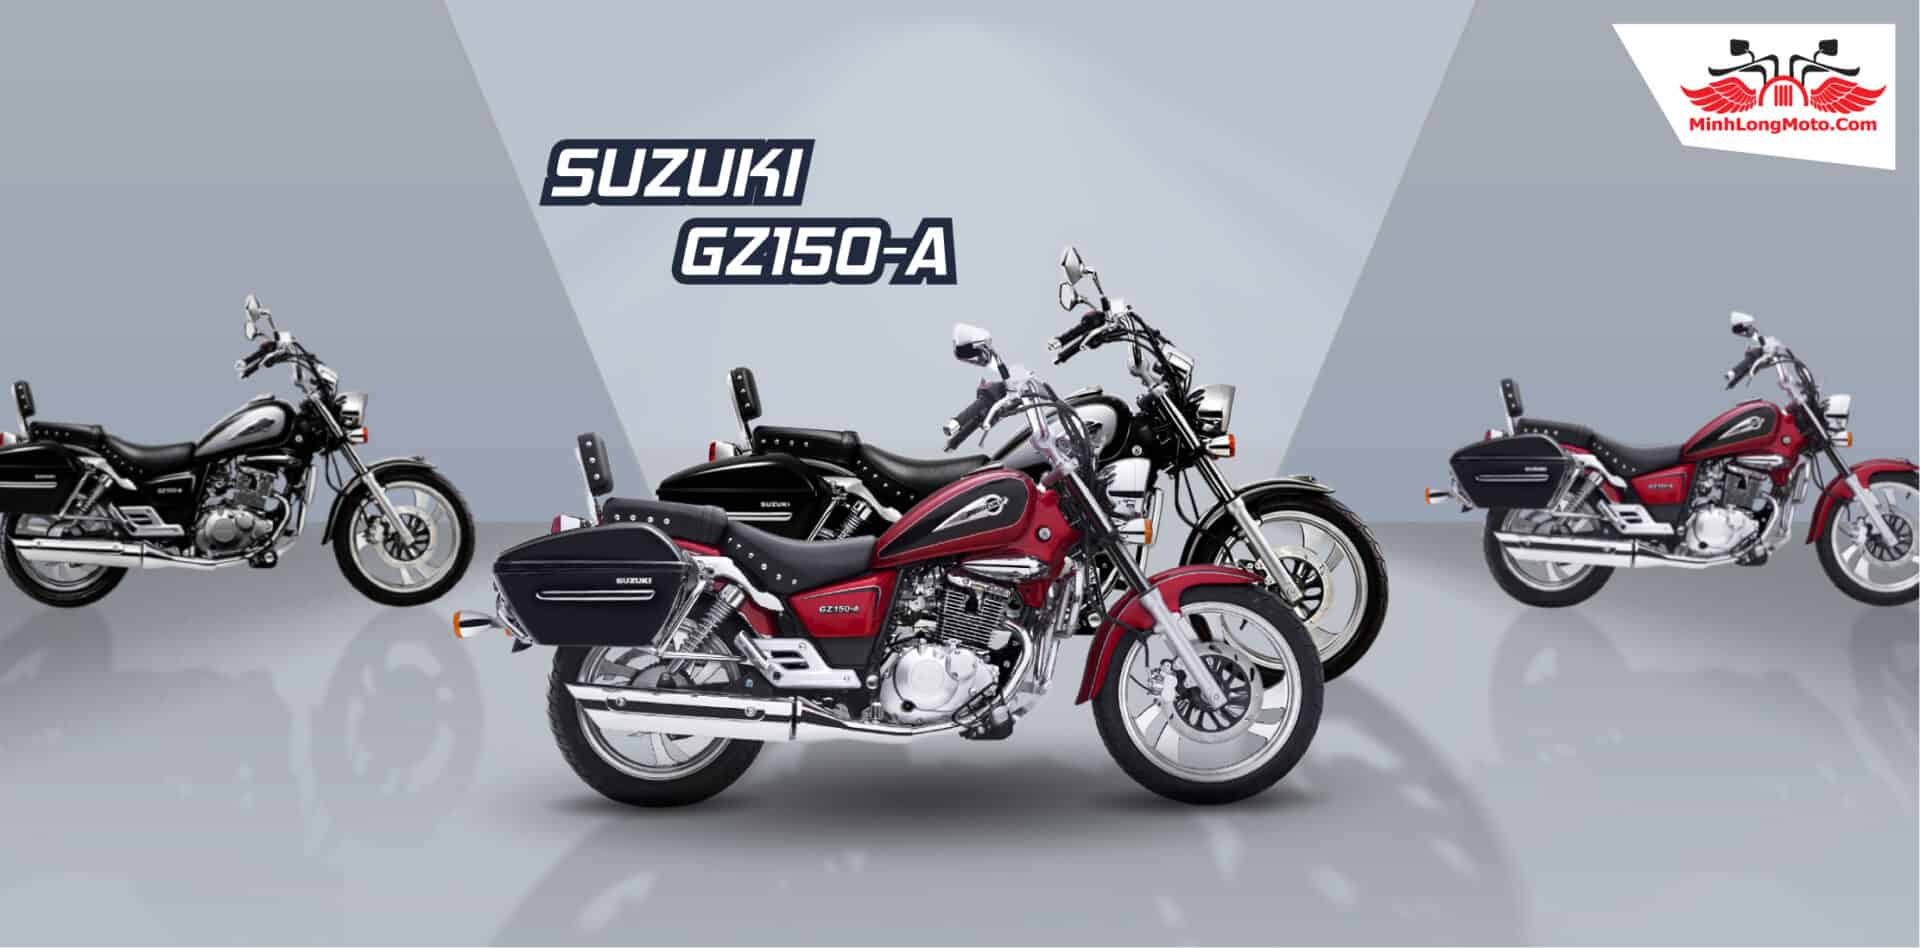 Suzuki GZ 150-A giá rẻ nhất – Cập nhật giá GZ150A hôm nay